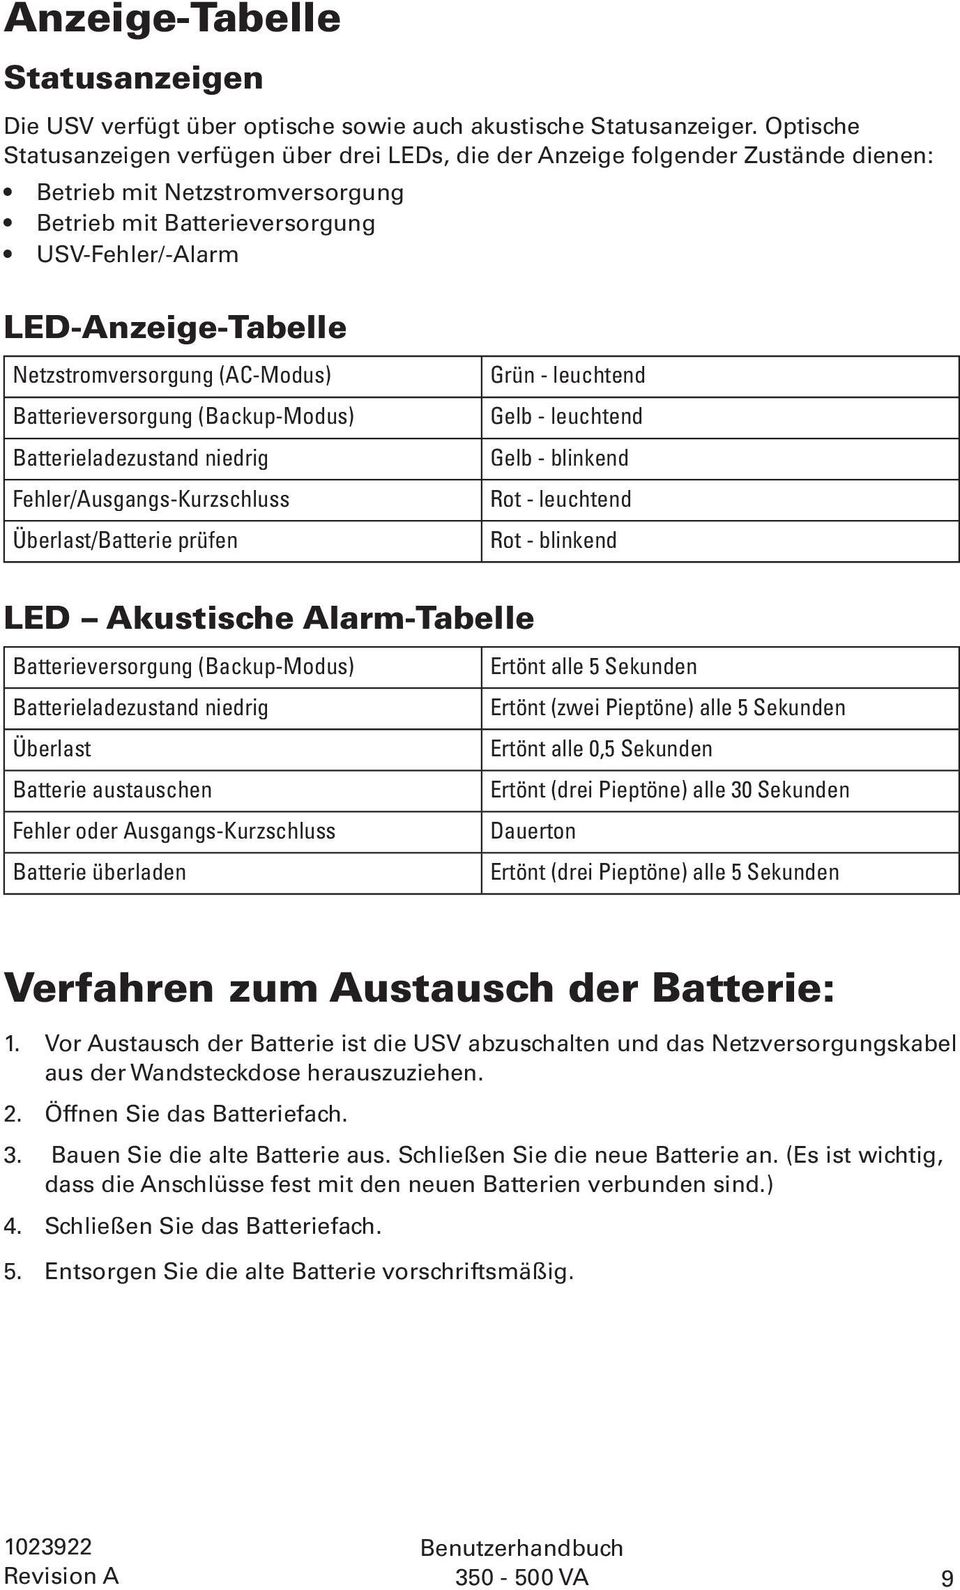 Netzstromversorgung (AC-Modus) Batterieversorgung (Backup-Modus) Batterieladezustand niedrig Fehler/Ausgangs-Kurzschluss Überlast/Batterie prüfen Grün - leuchtend Gelb - leuchtend Gelb - blinkend Rot